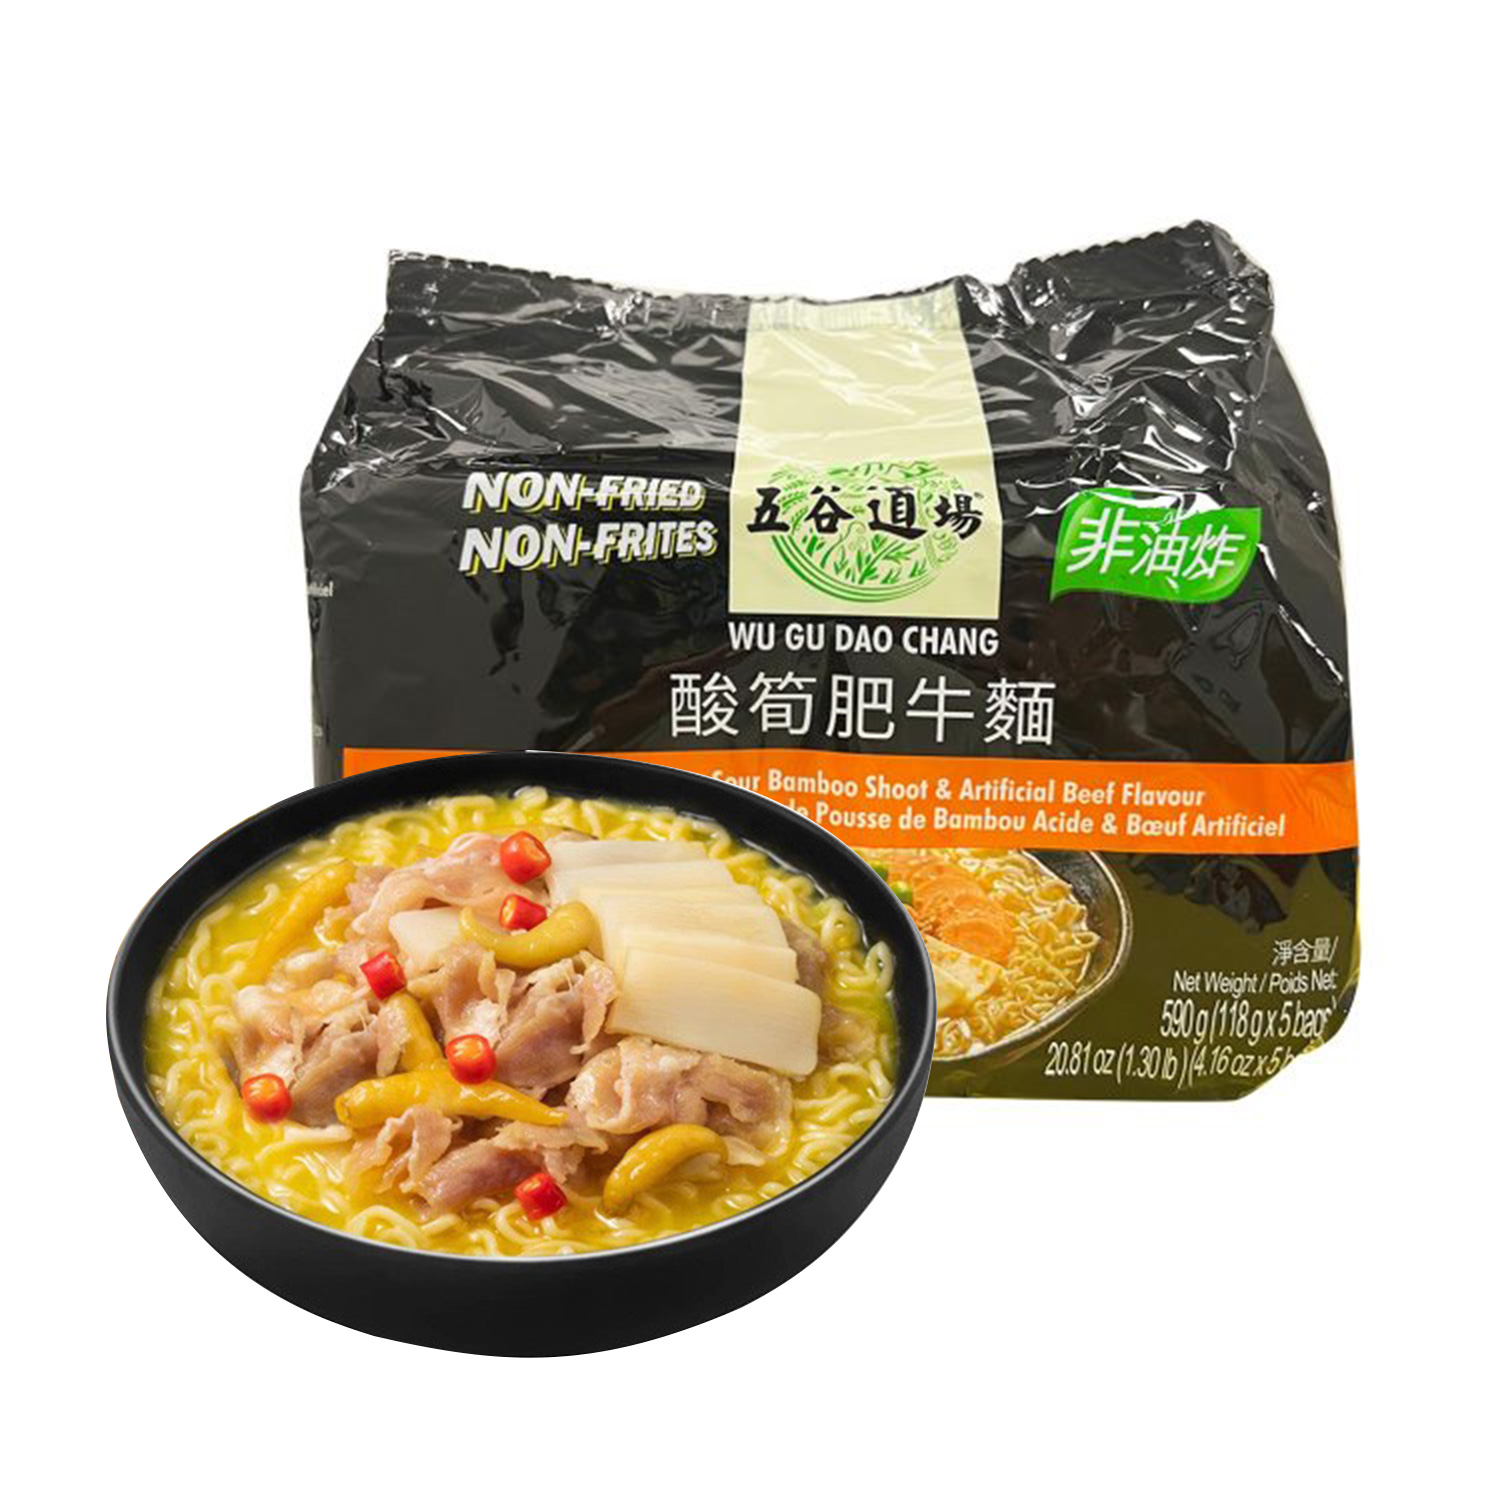 Wu Gu Dao Chang Sour Bamboo Fat & Beef Flavour Instant Noodles 118g*5-eBest-Instant Noodles,Instant food